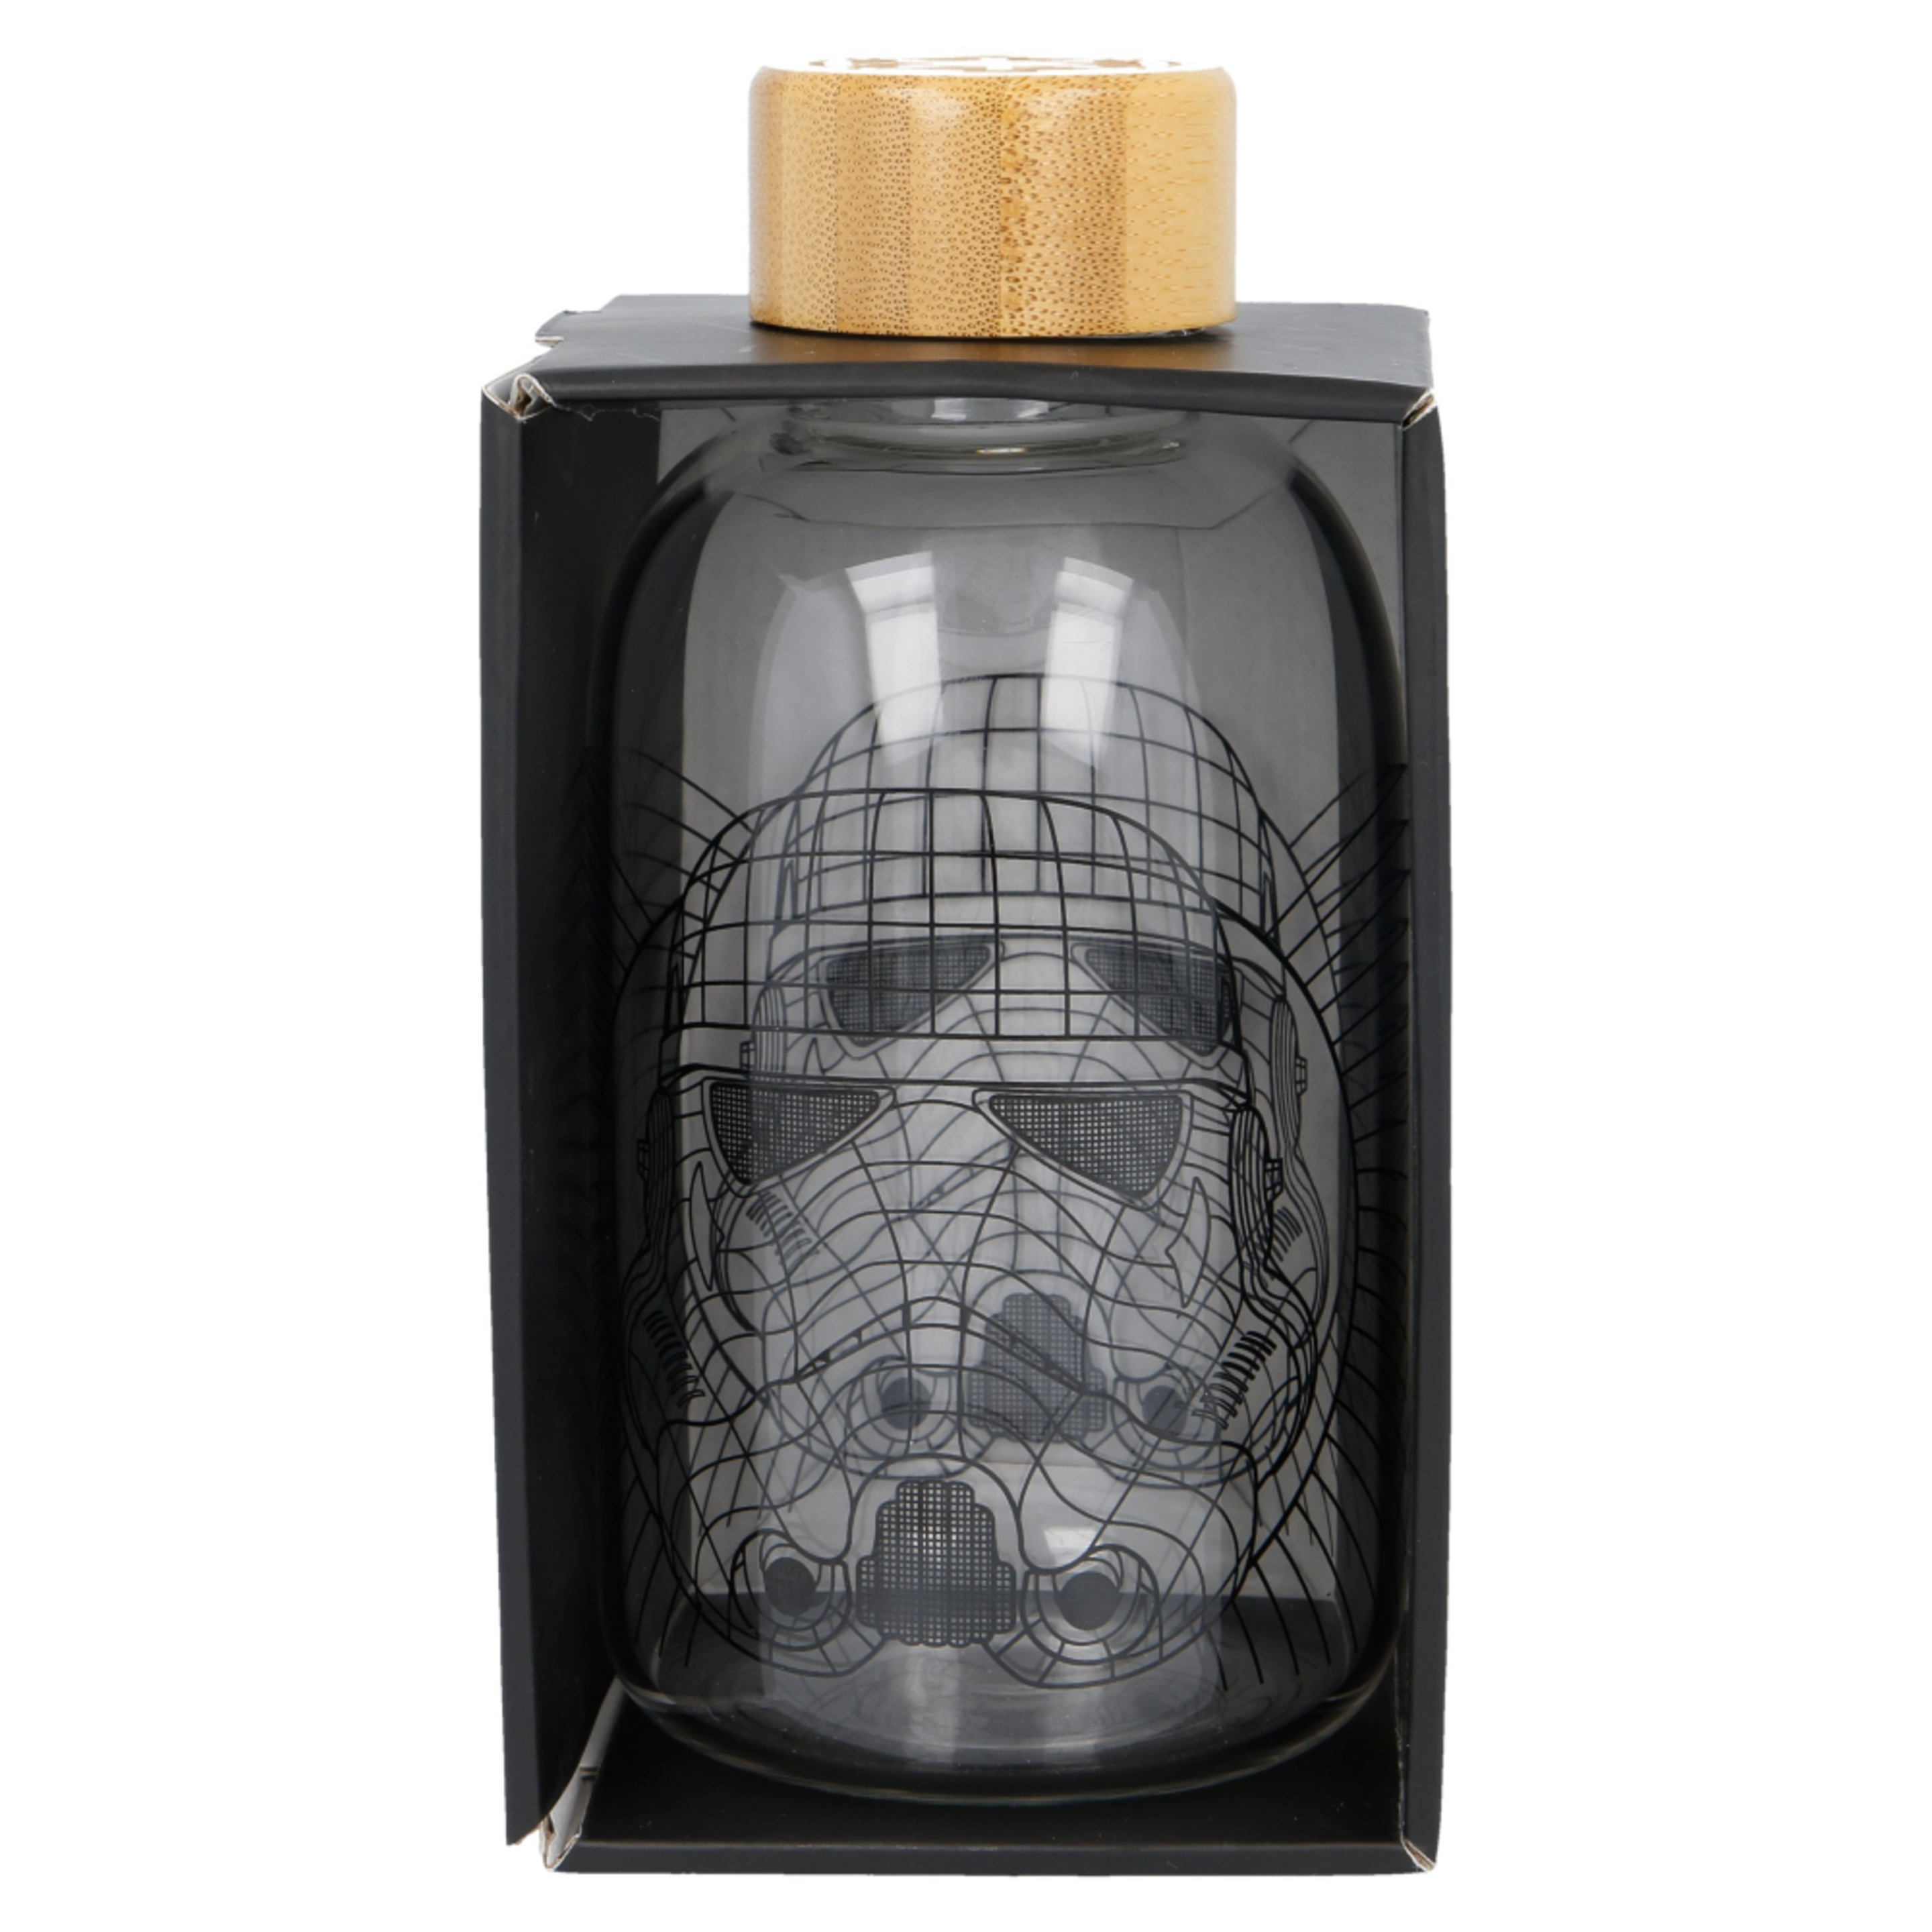 Botella Star Wars 63640 - Transparente  MKP